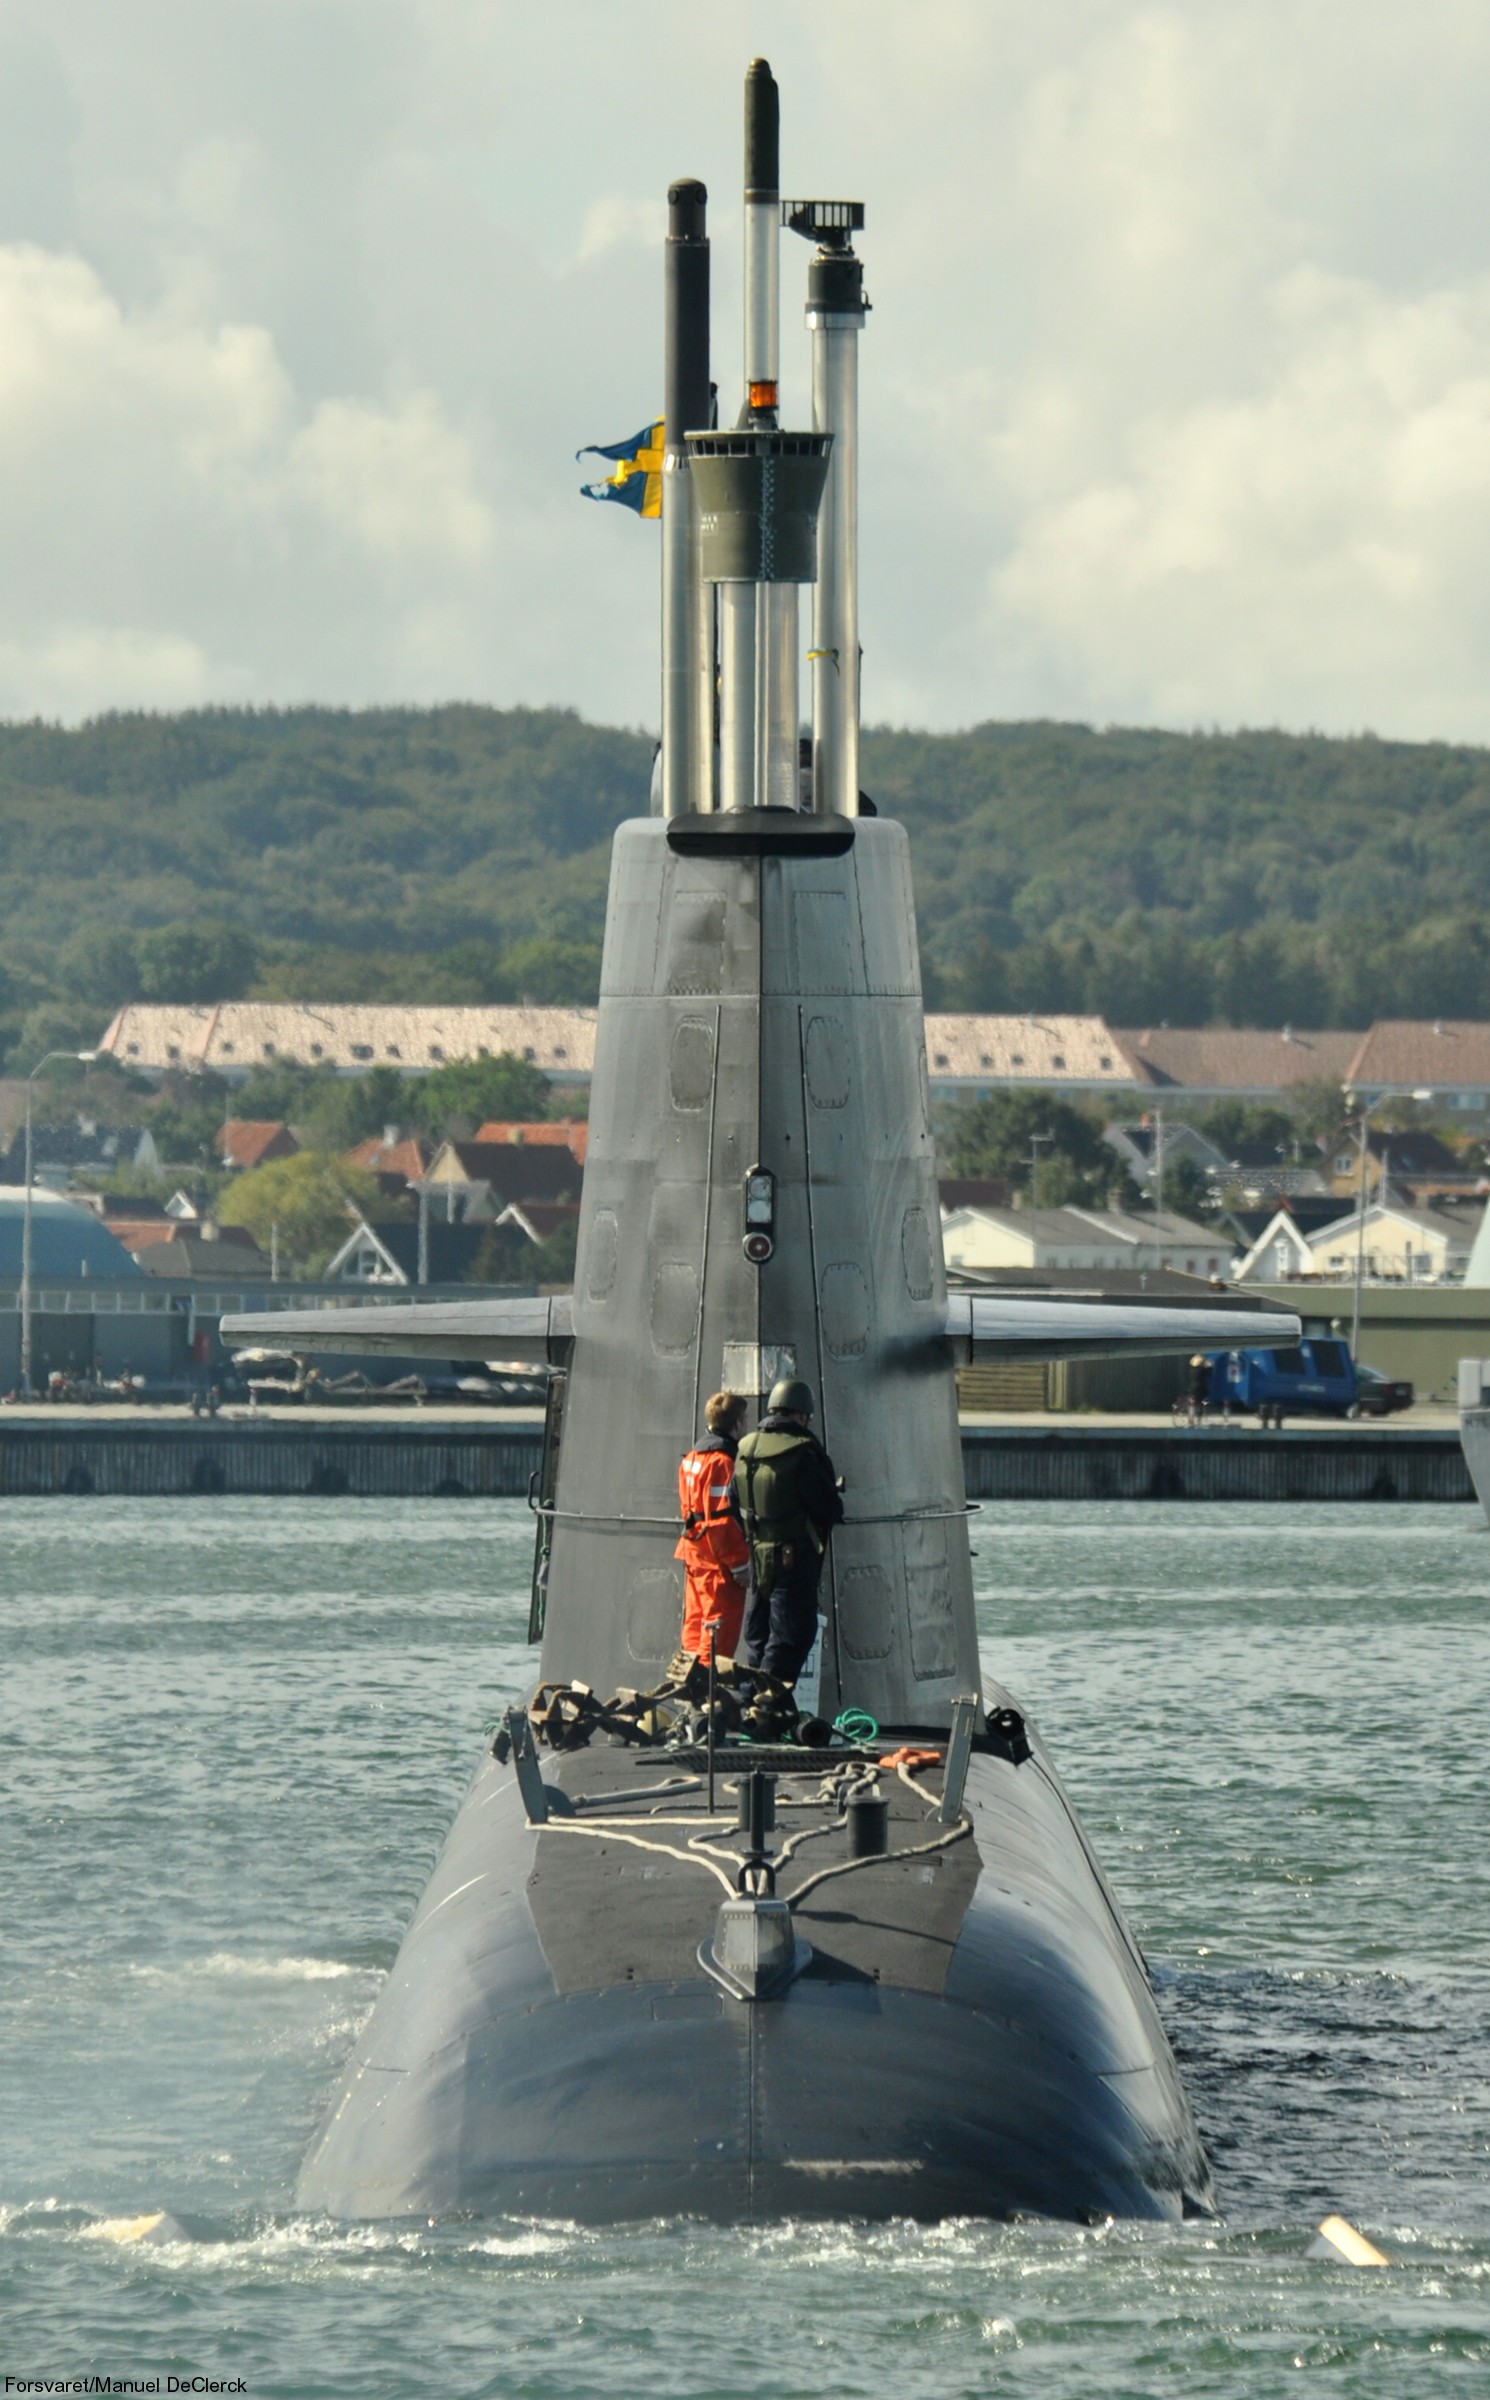 hswms hms gotland gtd class submarine ssk swedish navy svenska marinen försvarsmakten kockums 31